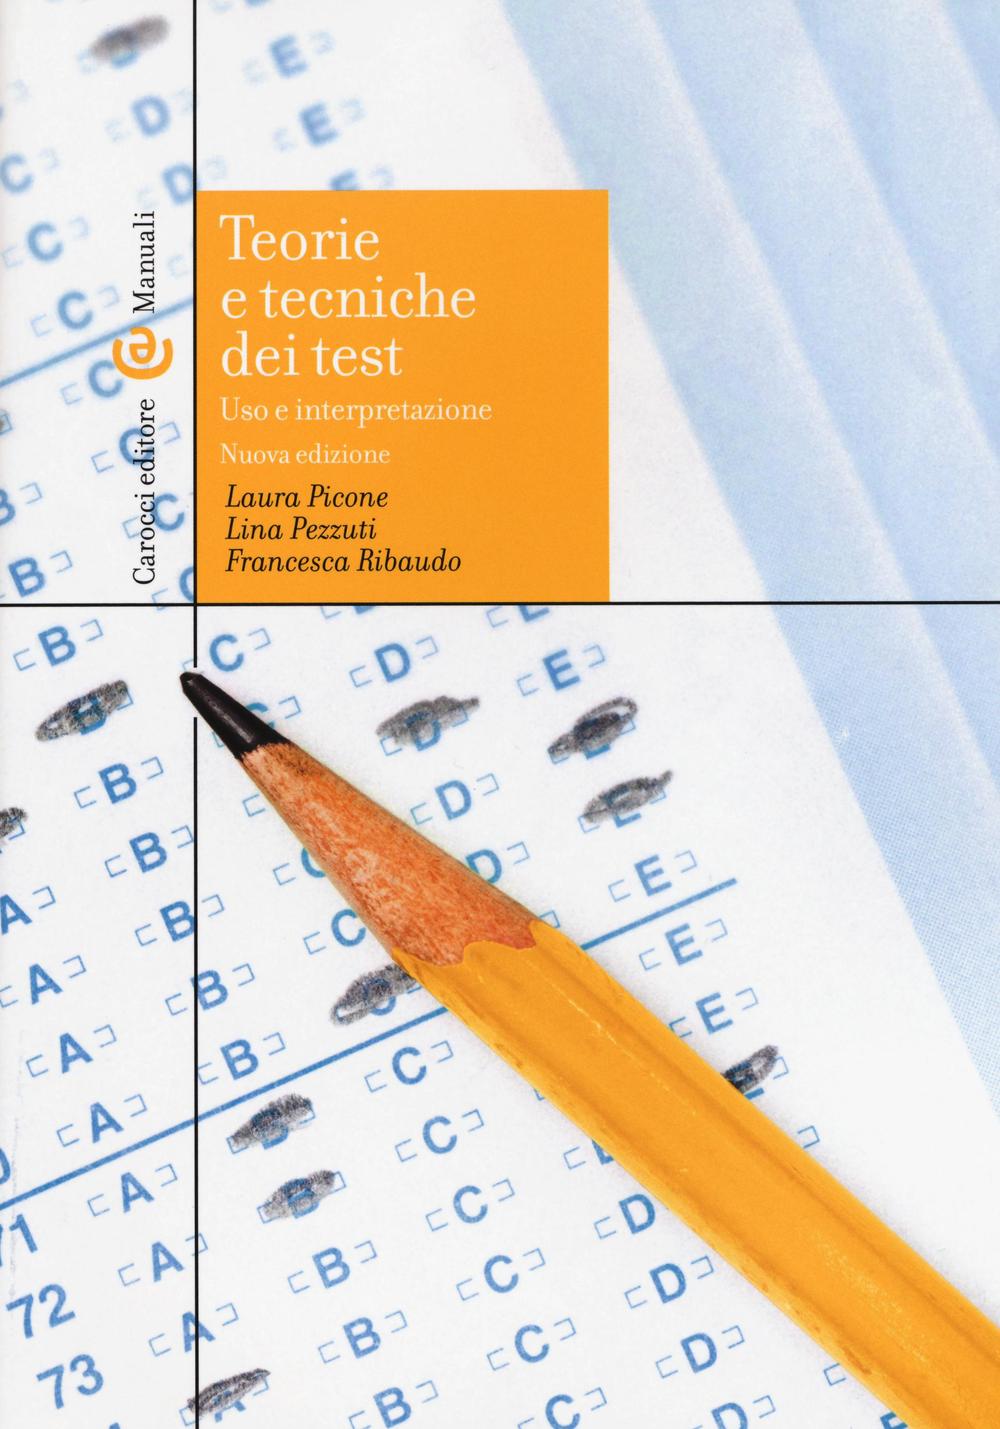 Knjiga Teorie e tecniche dei test Laura Picone